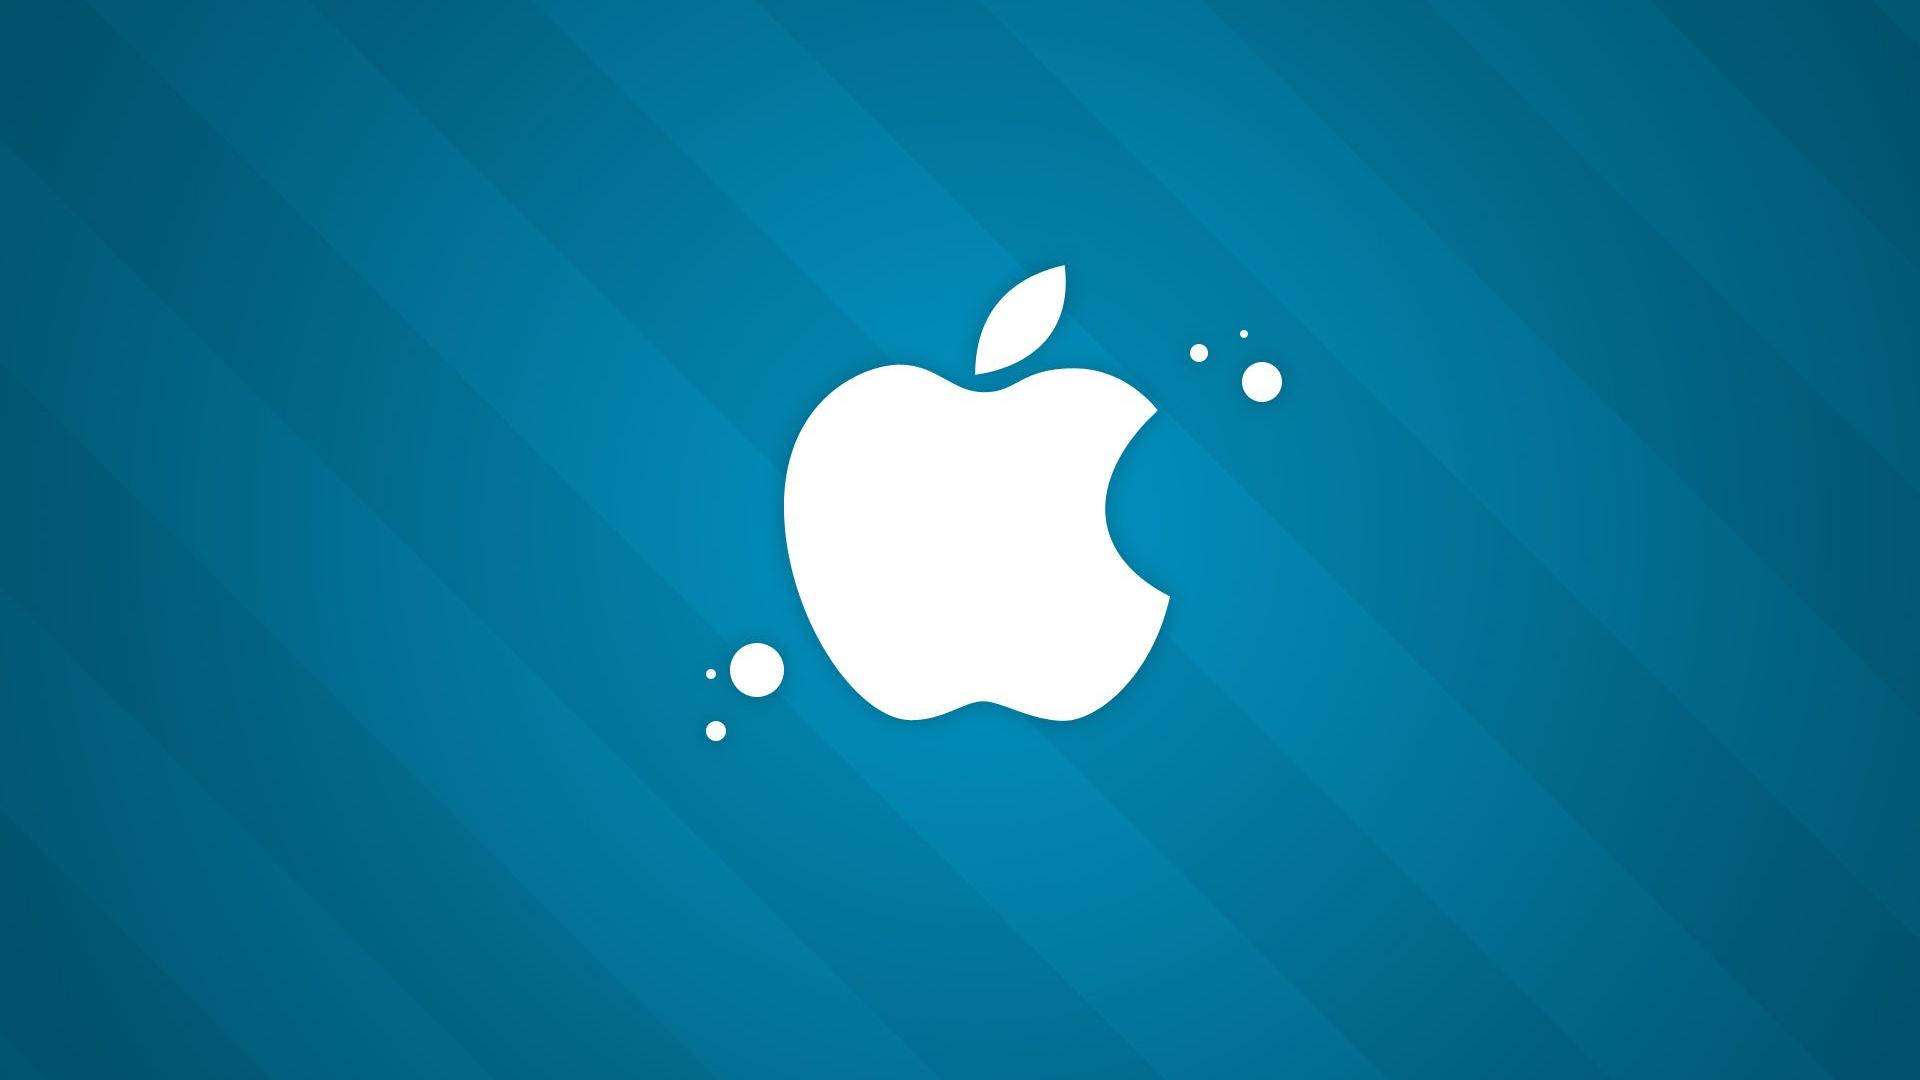 Apple Logo 4k On Blue Background Wallpaper